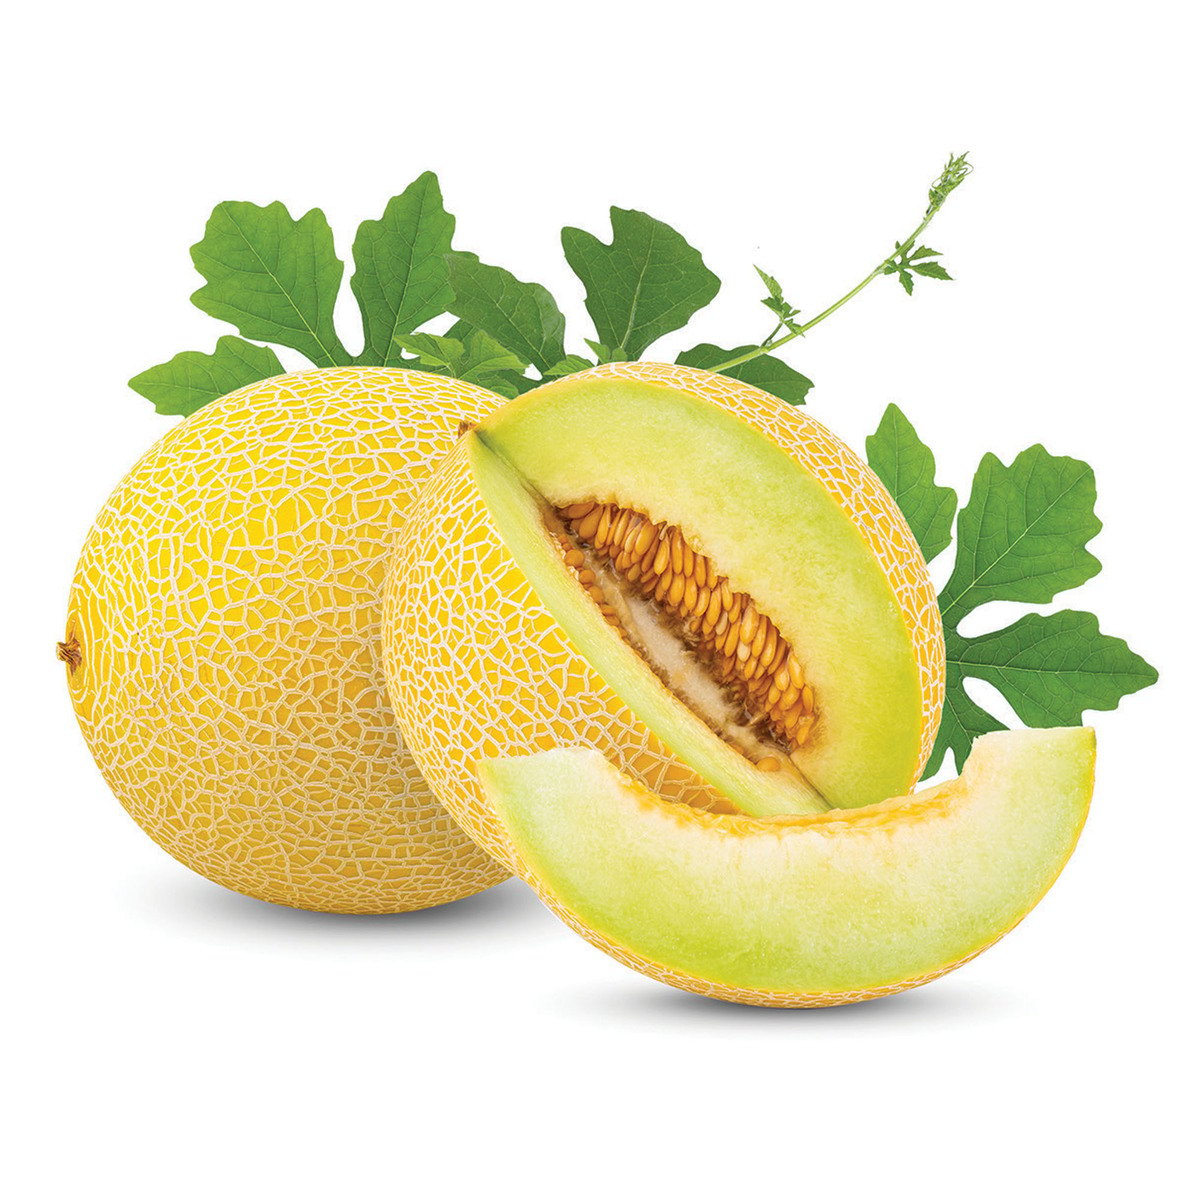 Buy Sweet Melon Yellow Iran 2 kg Online at Best Price | Melons | Lulu UAE in UAE